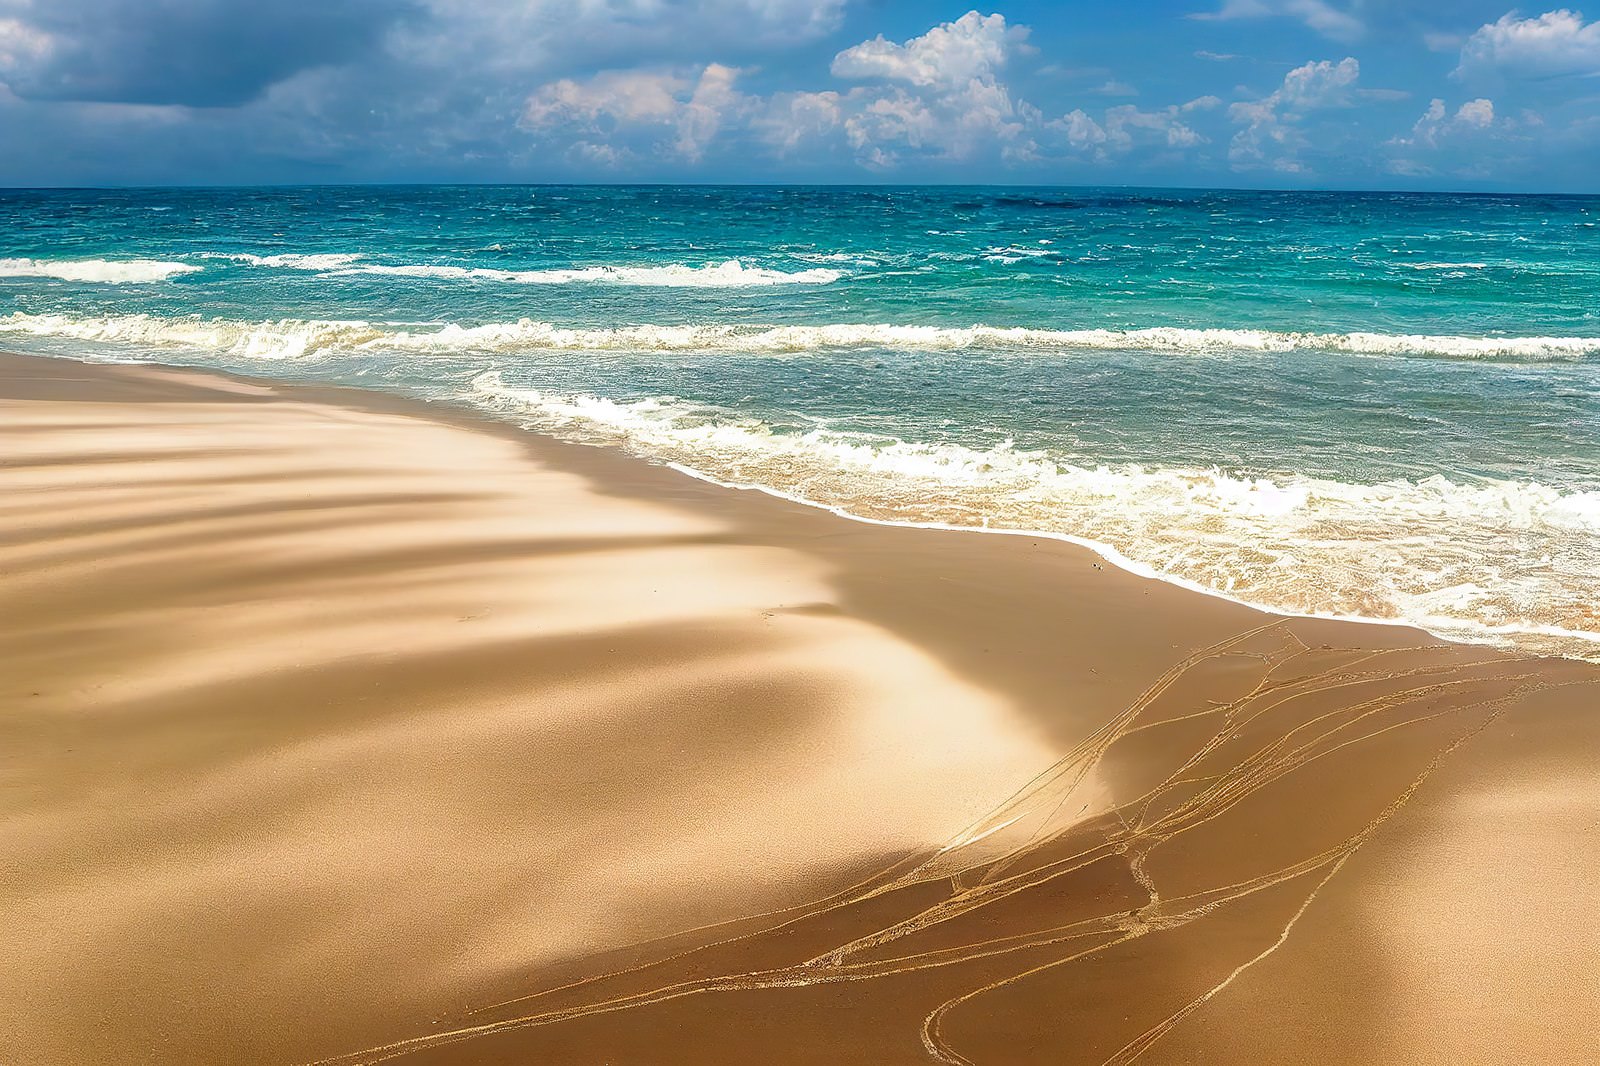 「南国の白浜と青い海 | フリー素材のぱくたそ」の写真